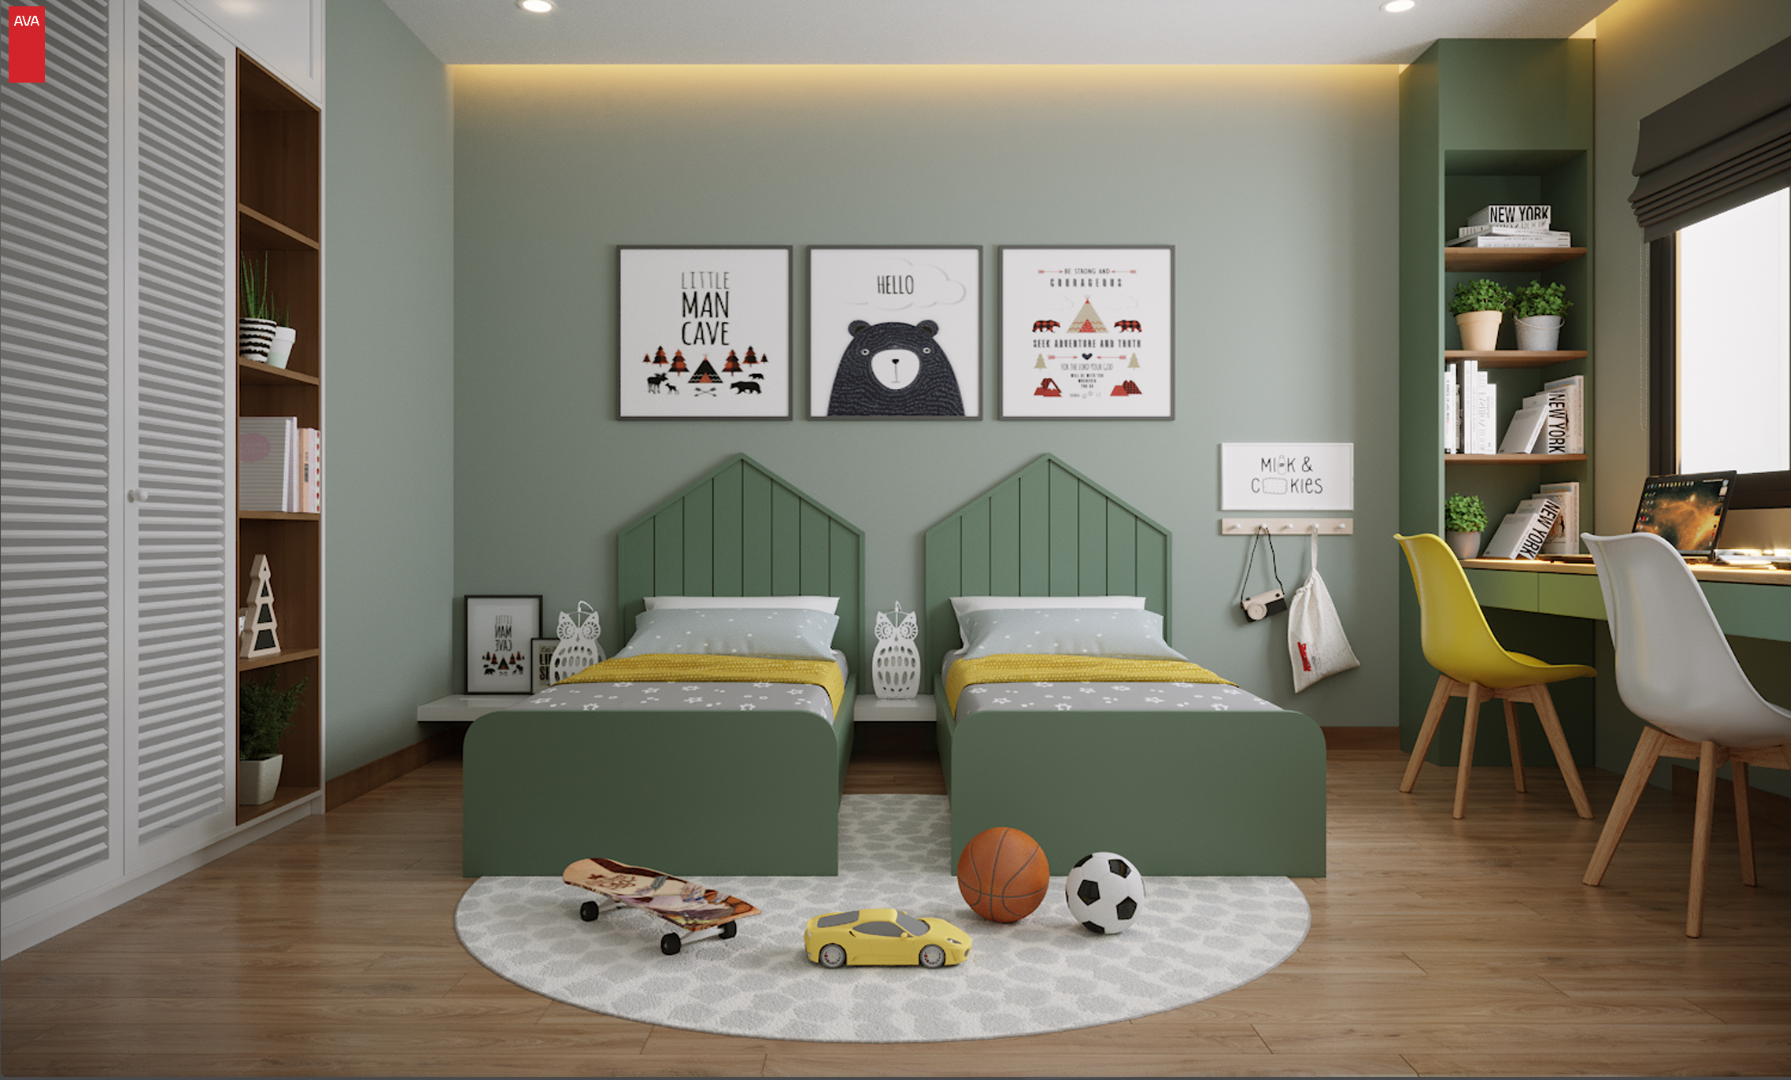 Mẫu thiết kế trang trí phòng ngủ nào đang được nhiều người quan tâm nhất?